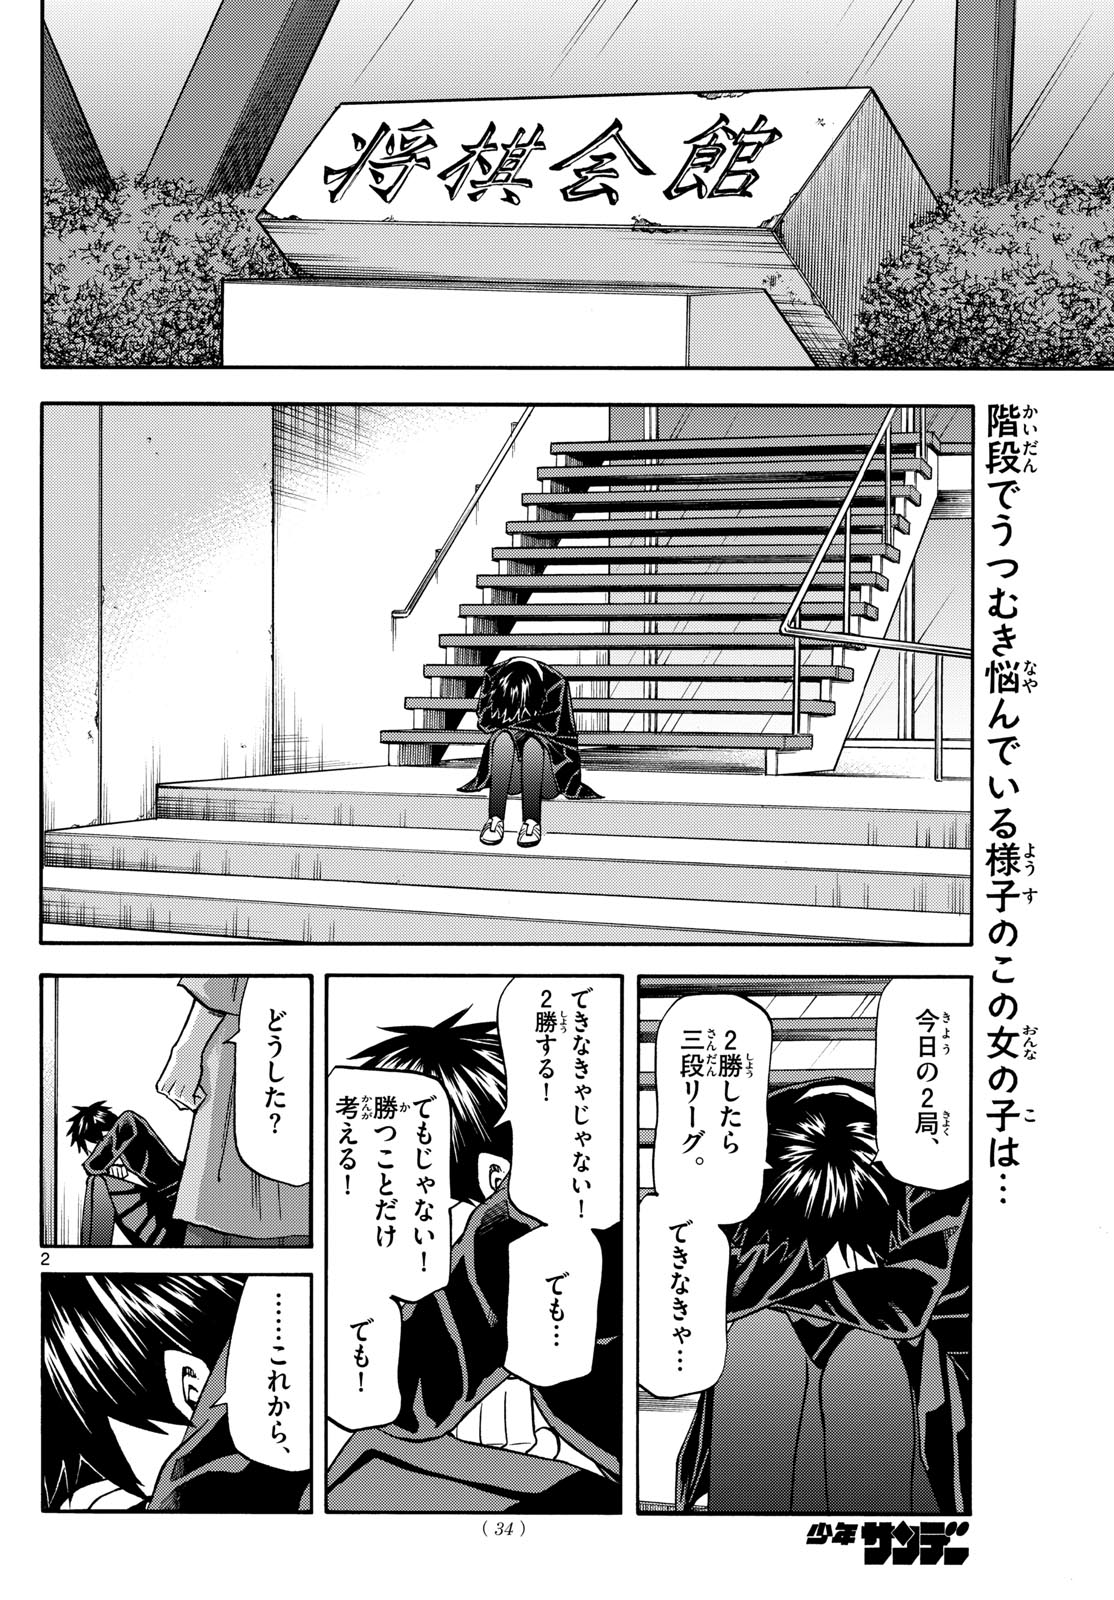 Tatsu to Ichigo - Chapter 181 - Page 2